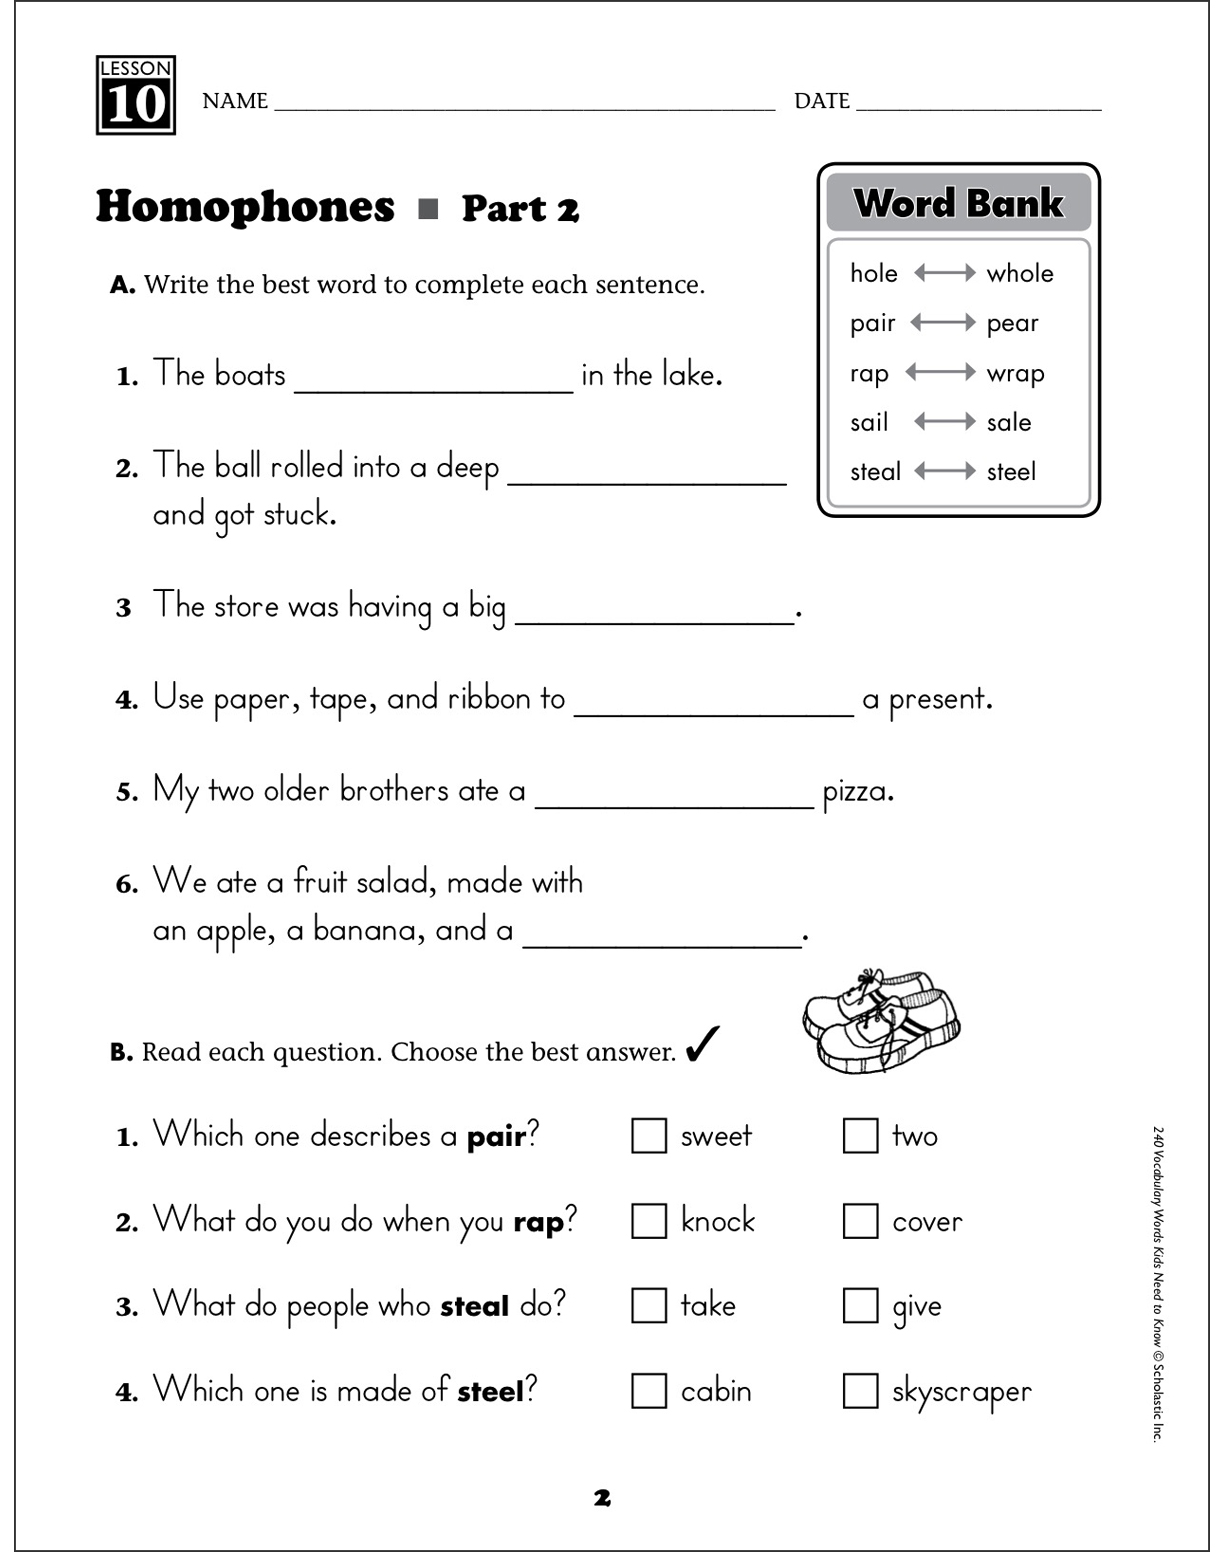 homophones grade 2 vocabulary printable skills sheets